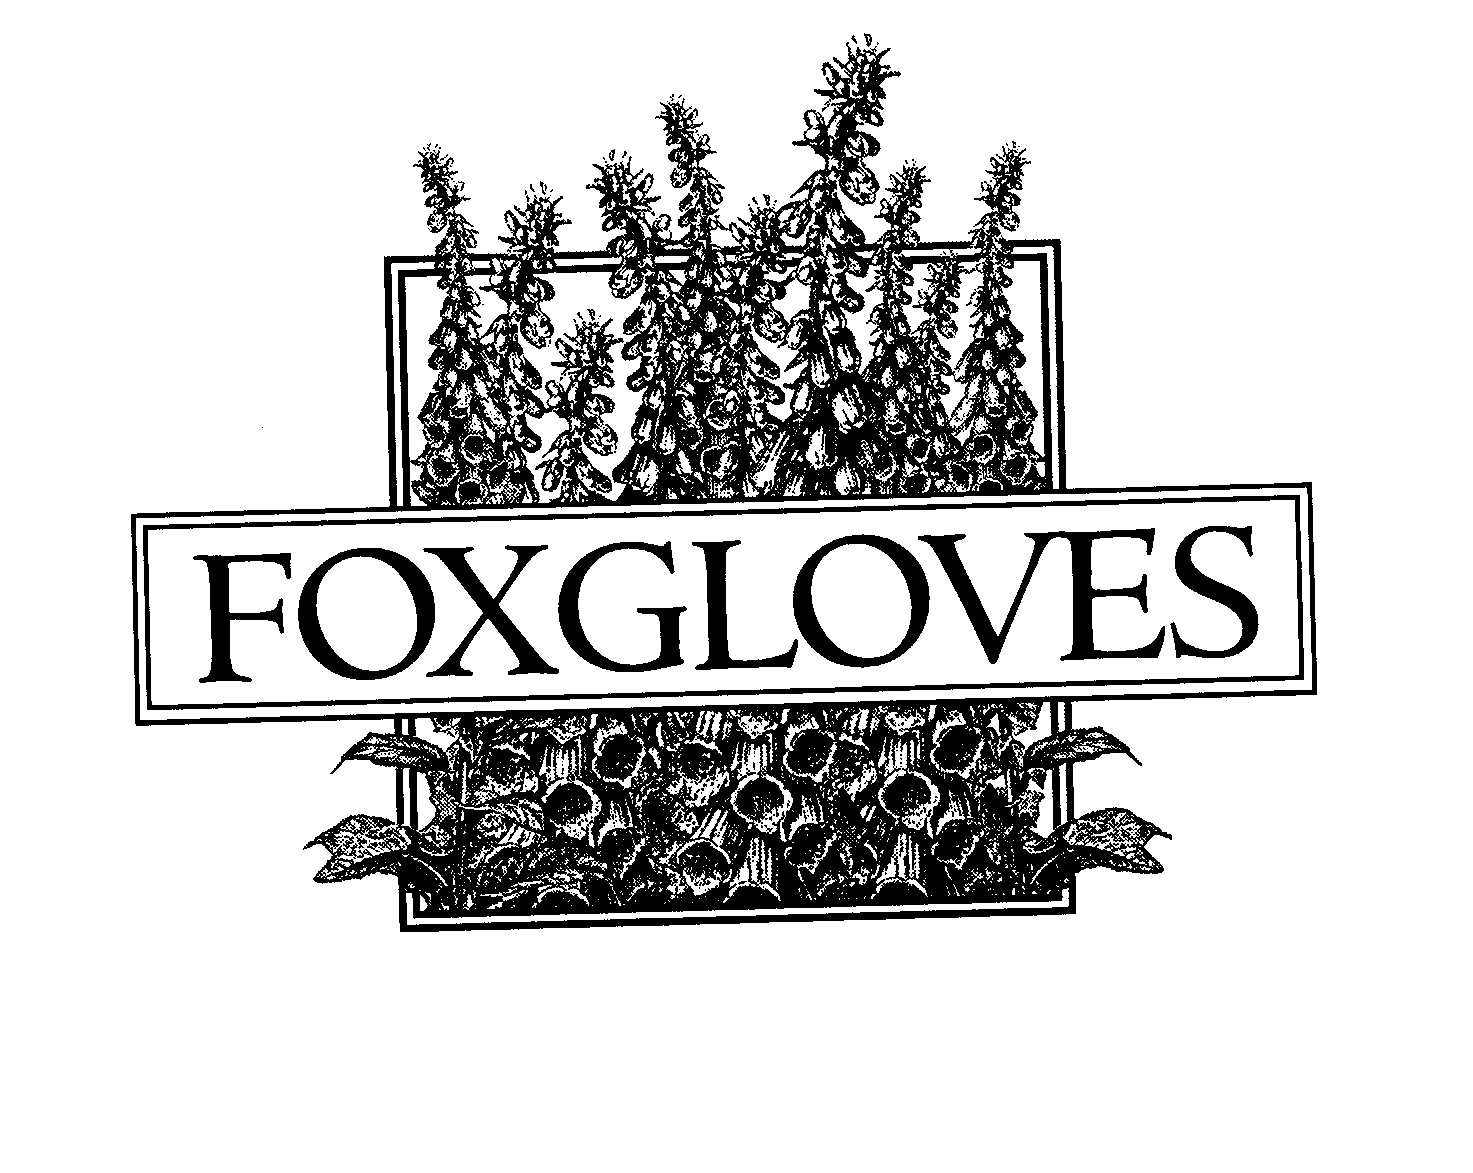 FOXGLOVES